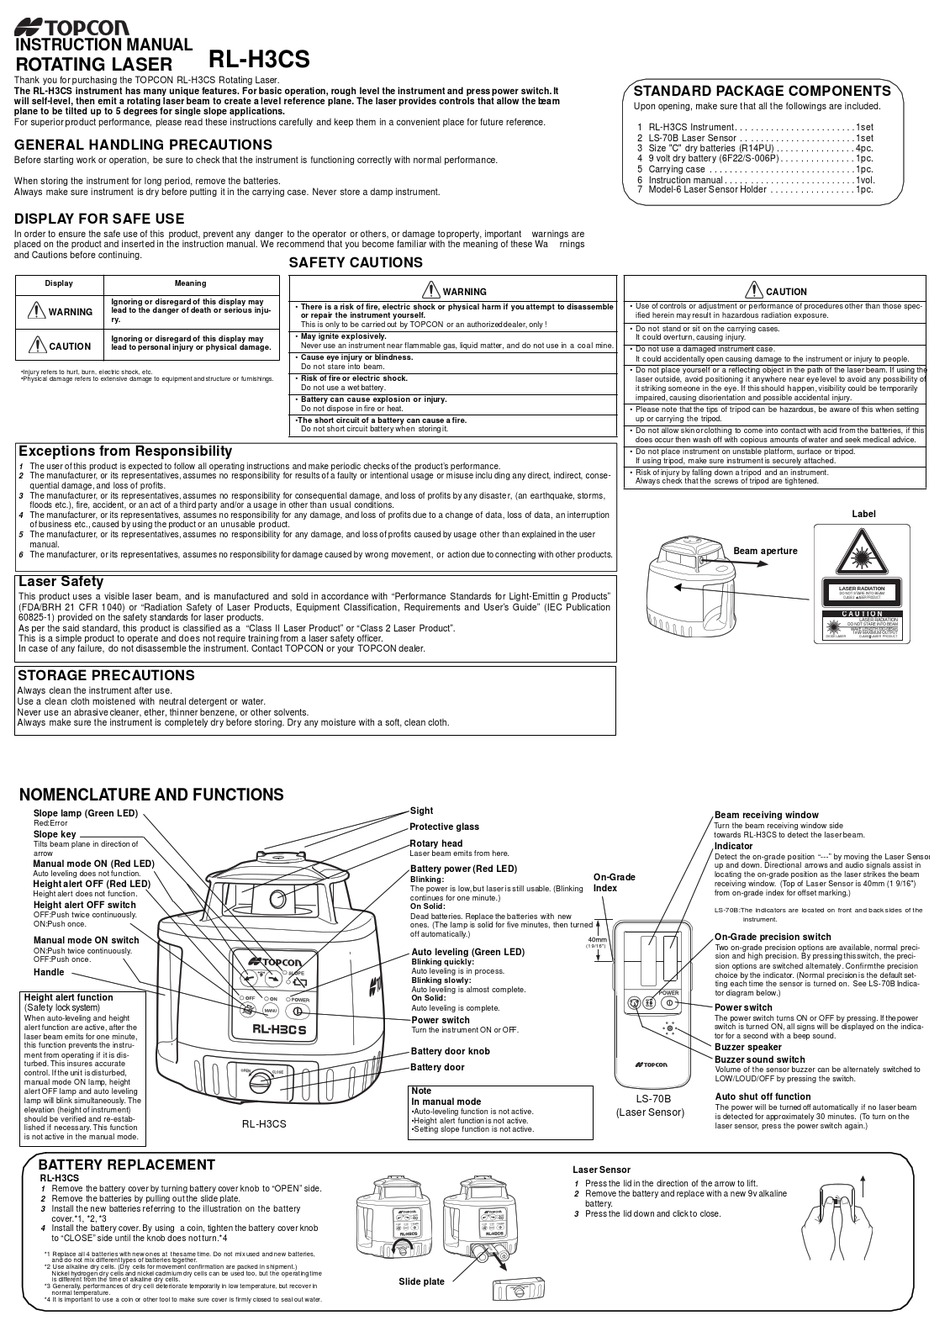 Topcon Rotating Laser RL-H2Sa Instruction Manual 